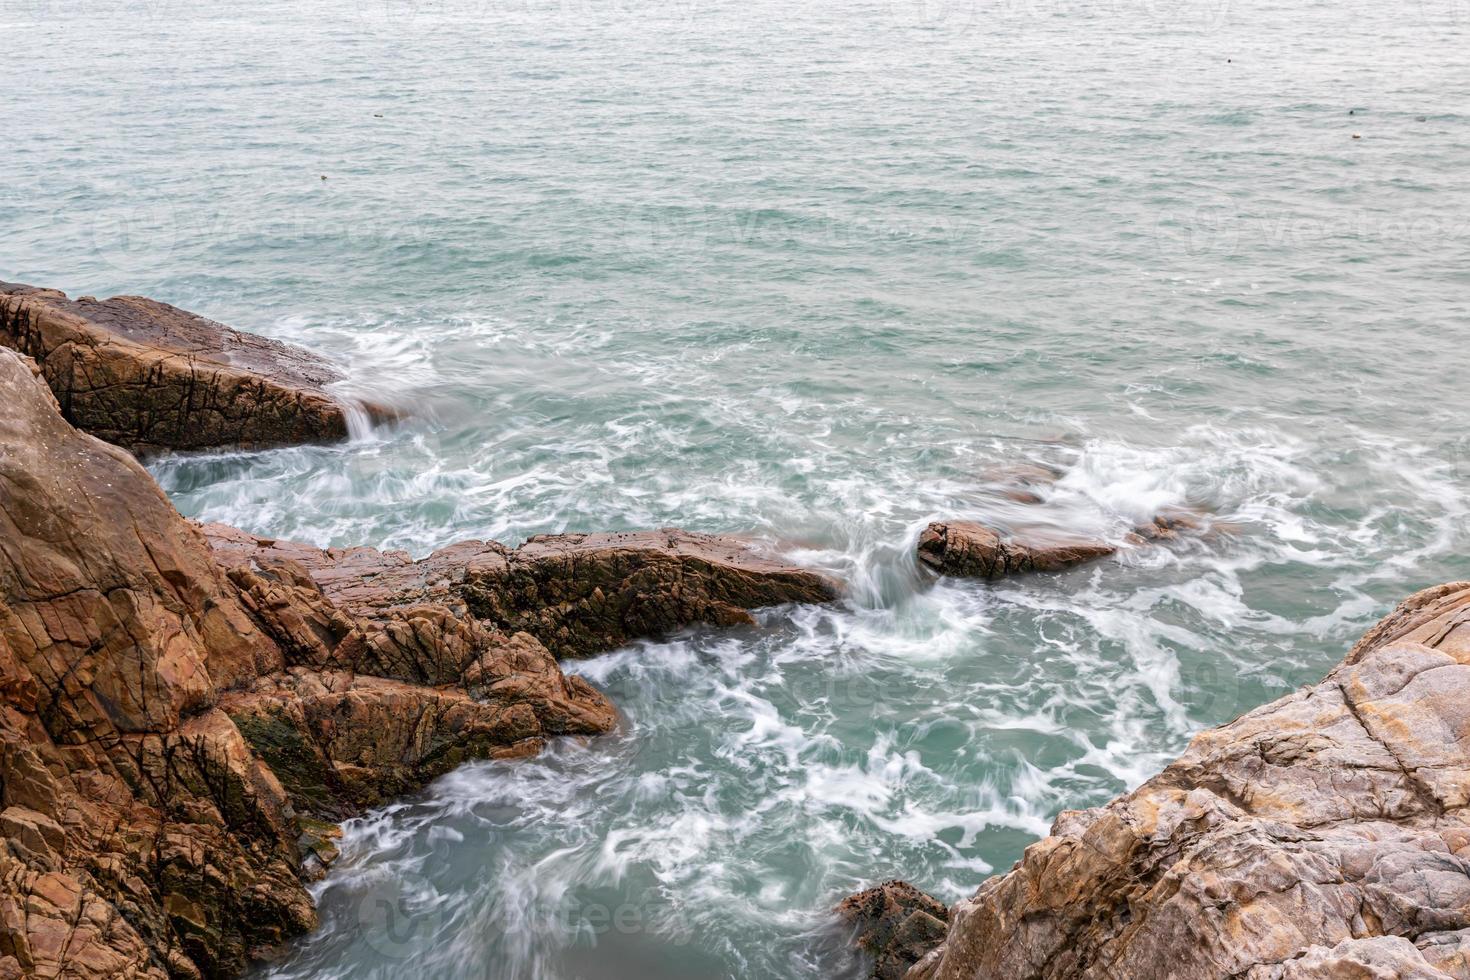 rocas y olas junto al mar foto